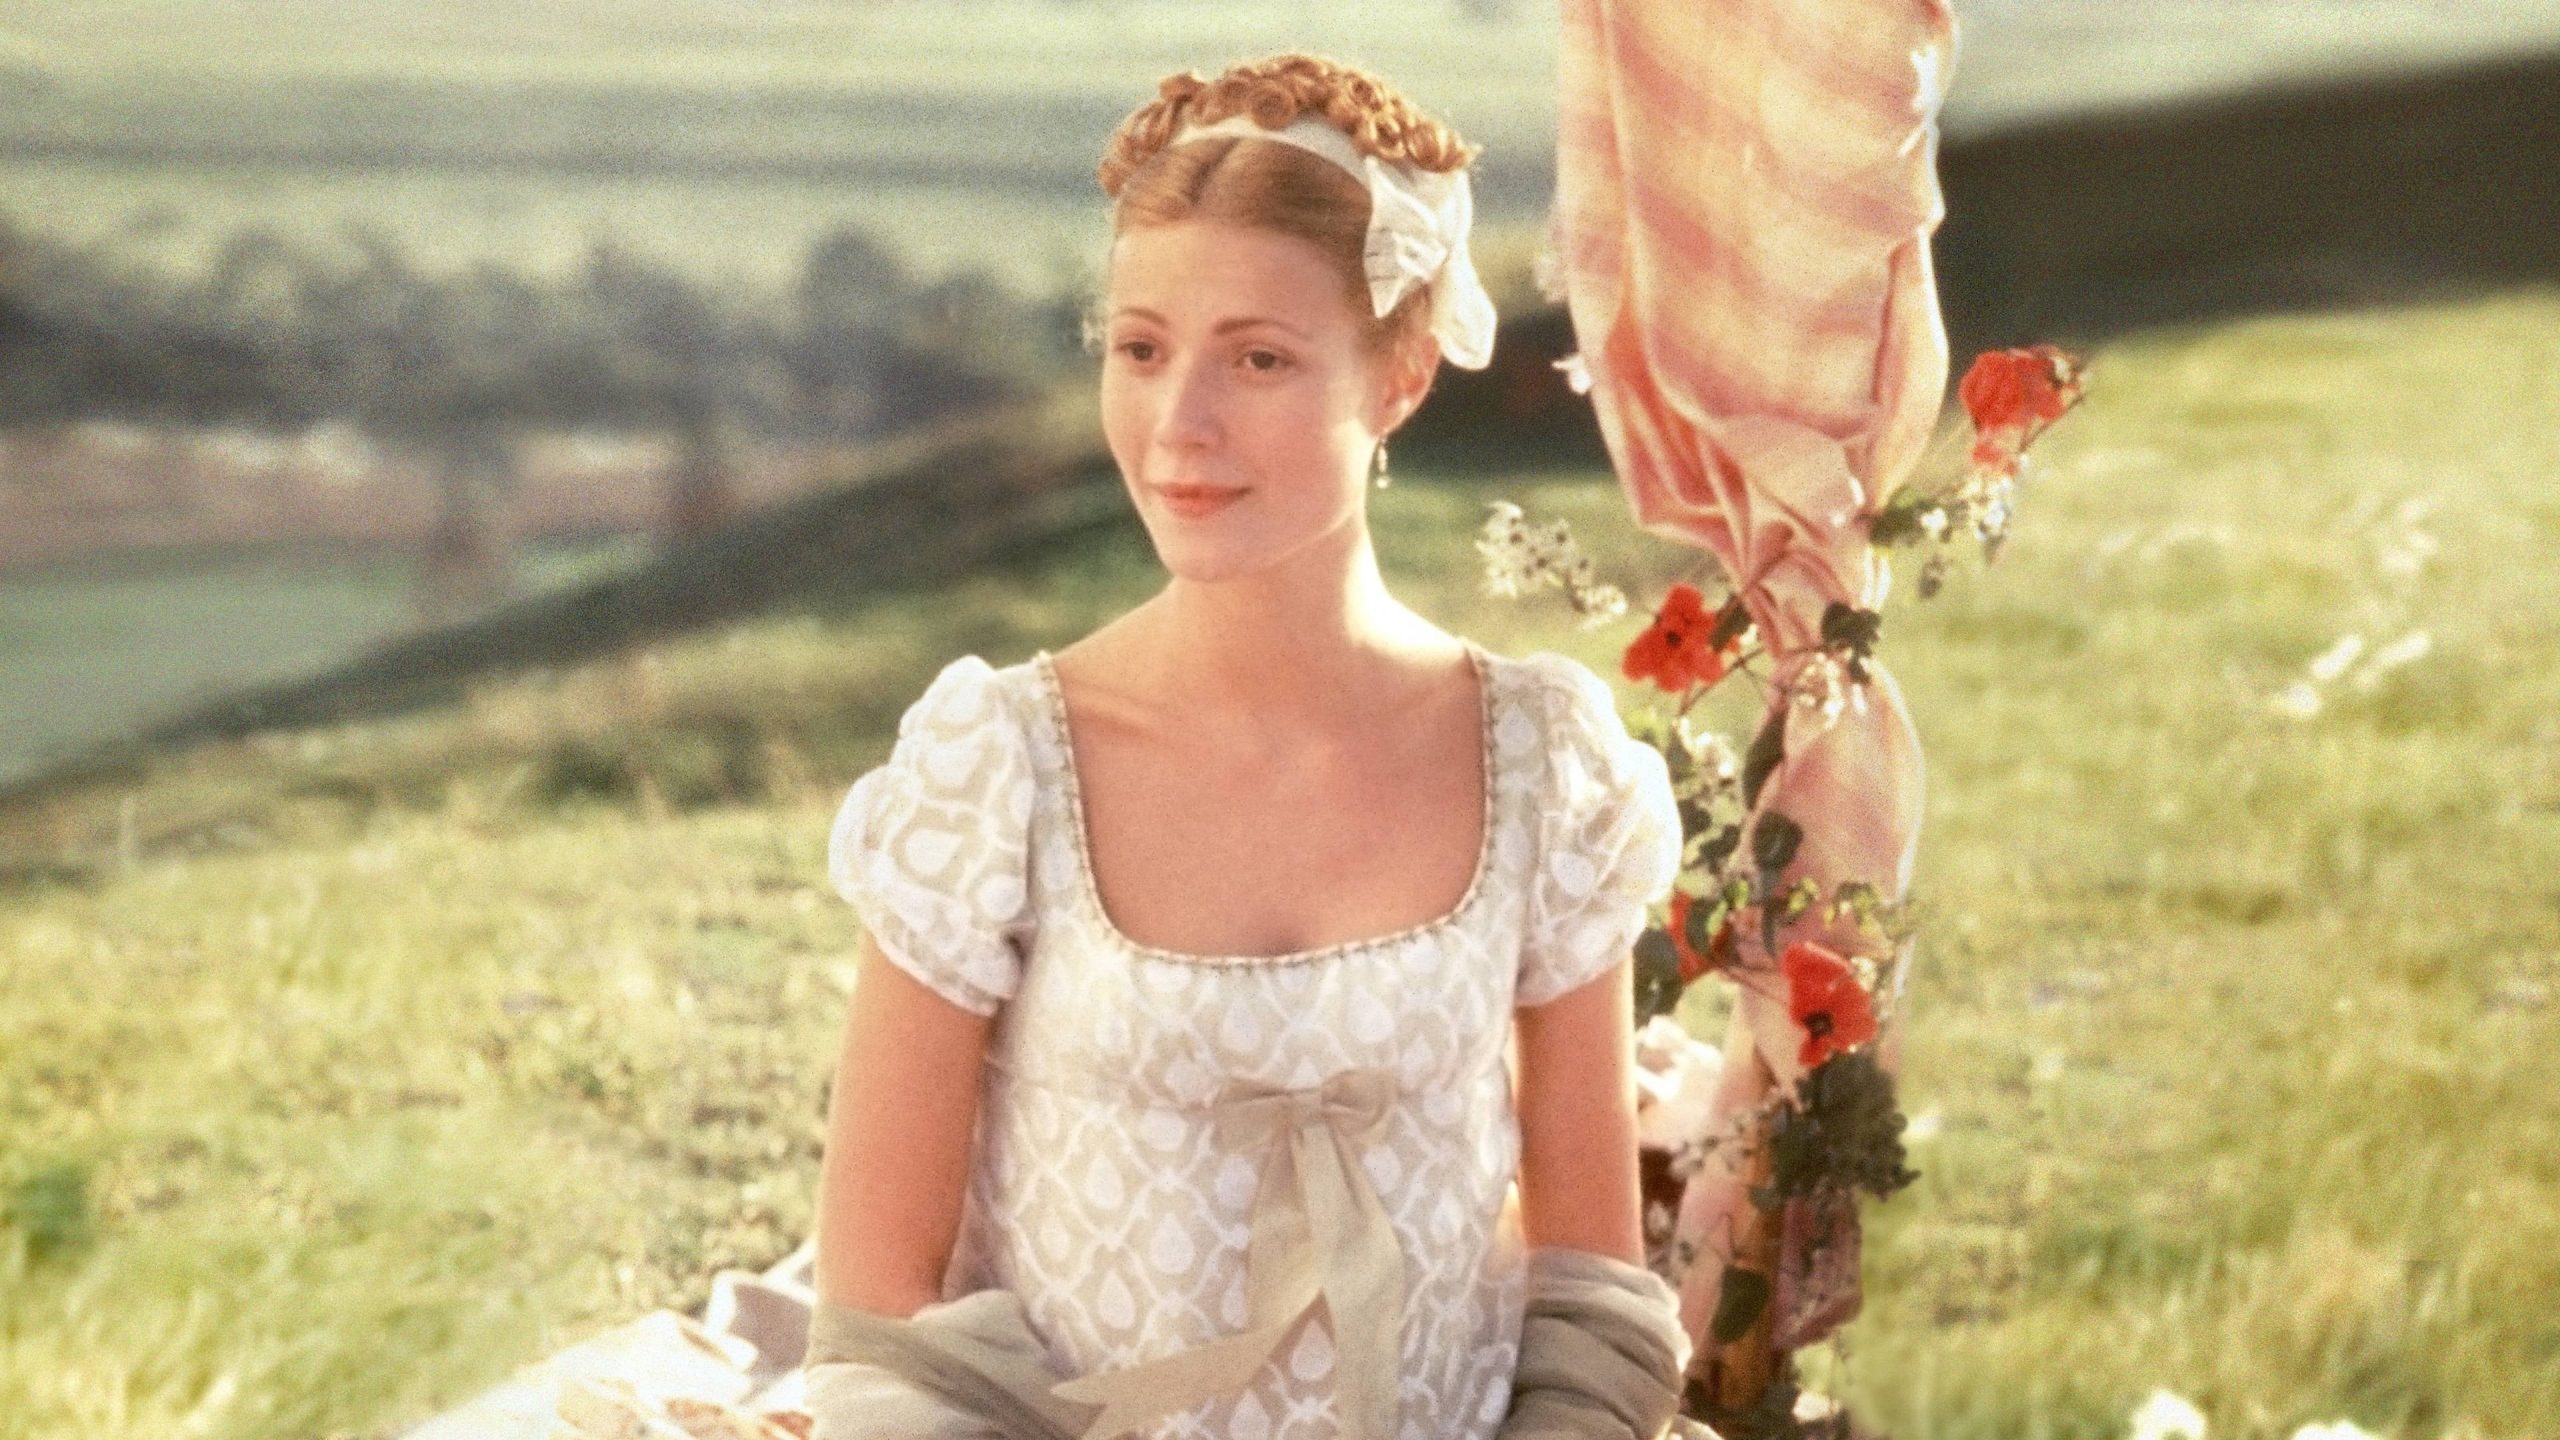 Frame de filme Emma, de Jane Austen. No frame em questão, a atriz Gwyneth Paltrow está no centro da imagem em meio a um campo verde